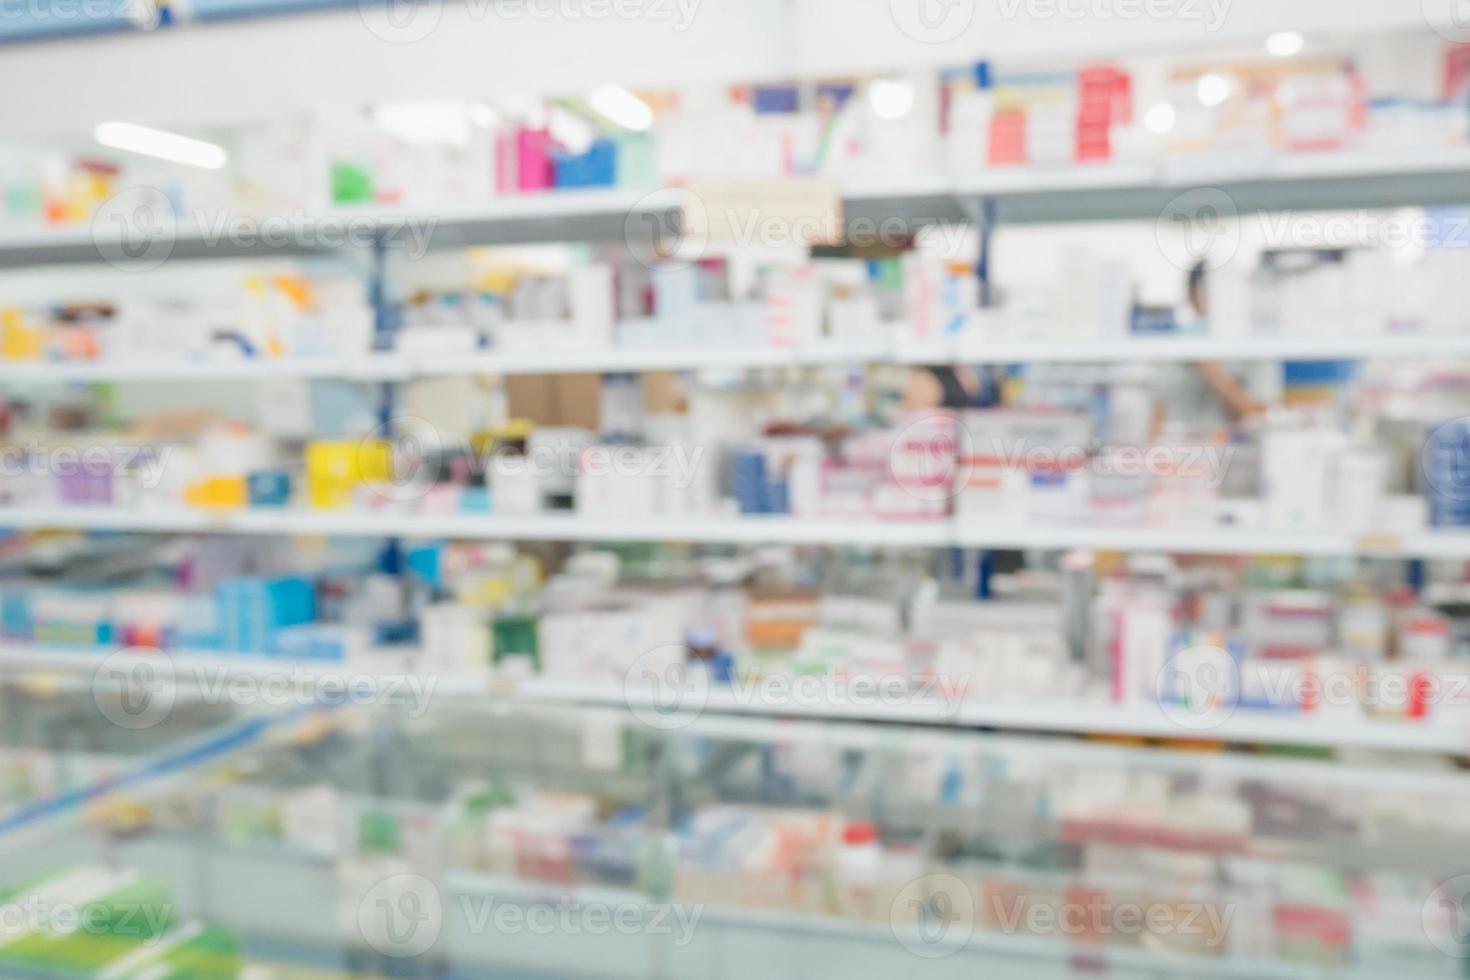 farmacia droguería tienda interior desenfoque de fondo foto